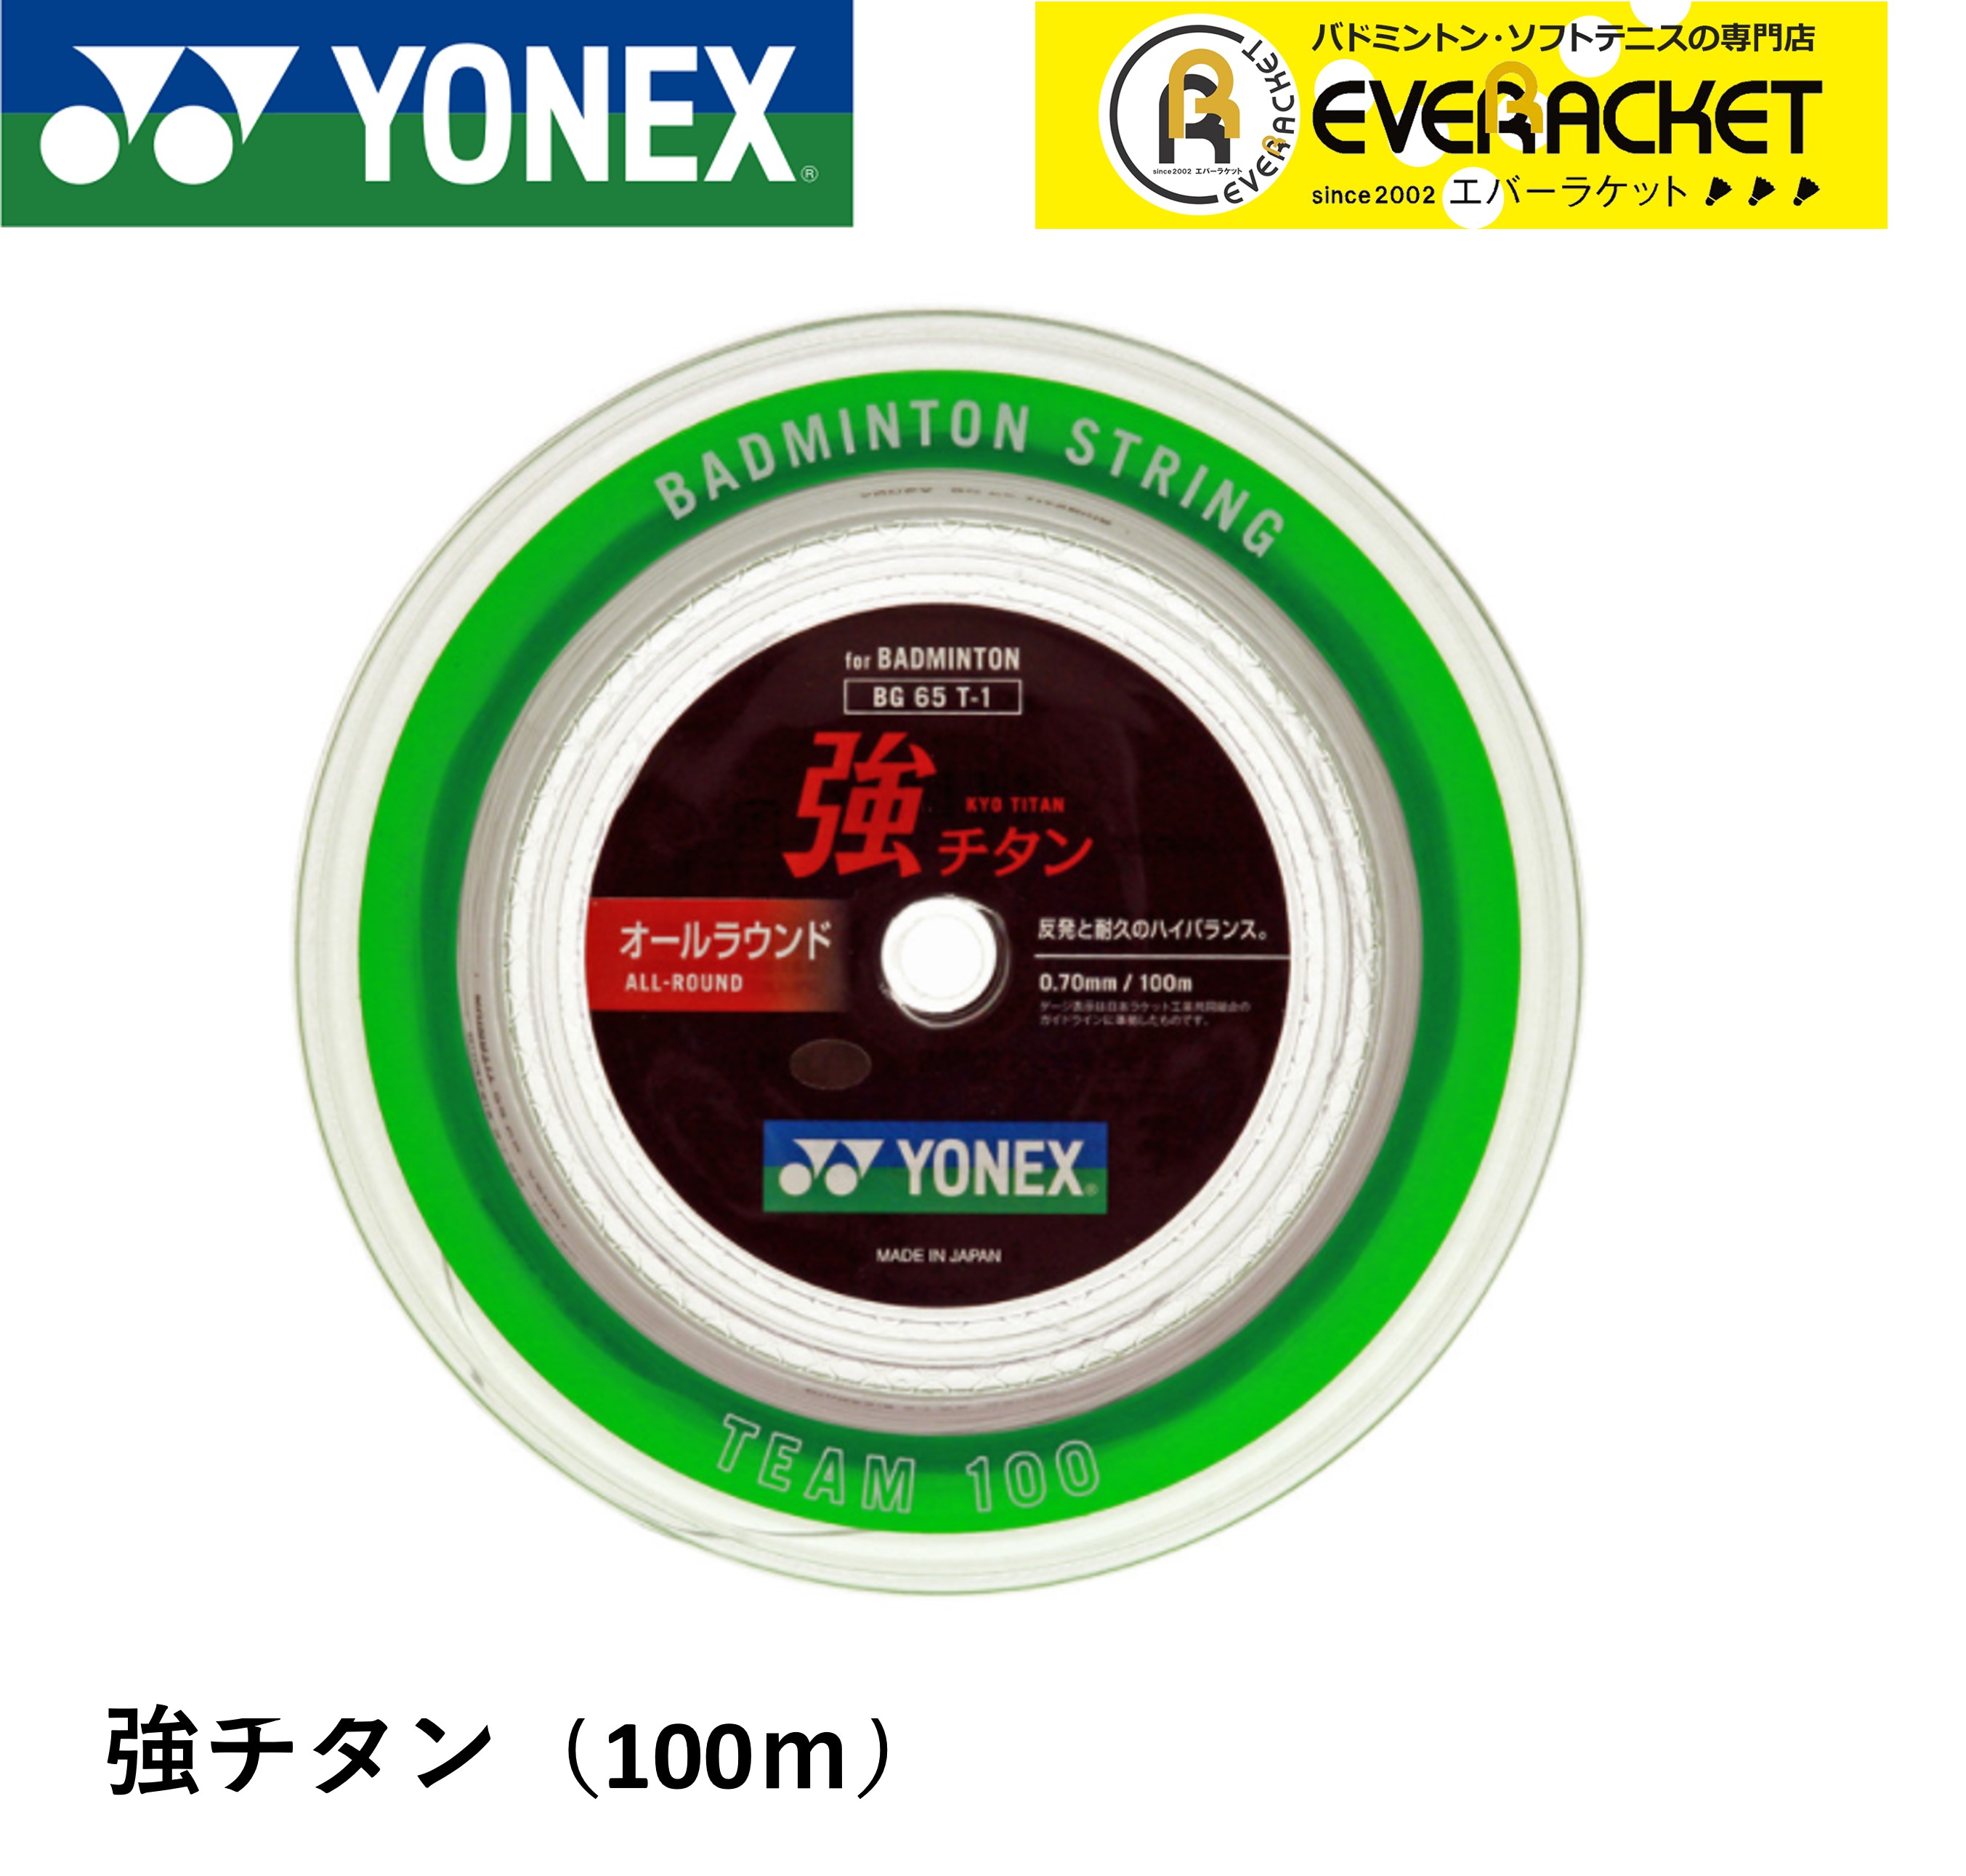 【最短出荷】ヨネックス YONEX バドミントンストリング キョウチタン(100M) 強チタン BG65T-1 バドミン..